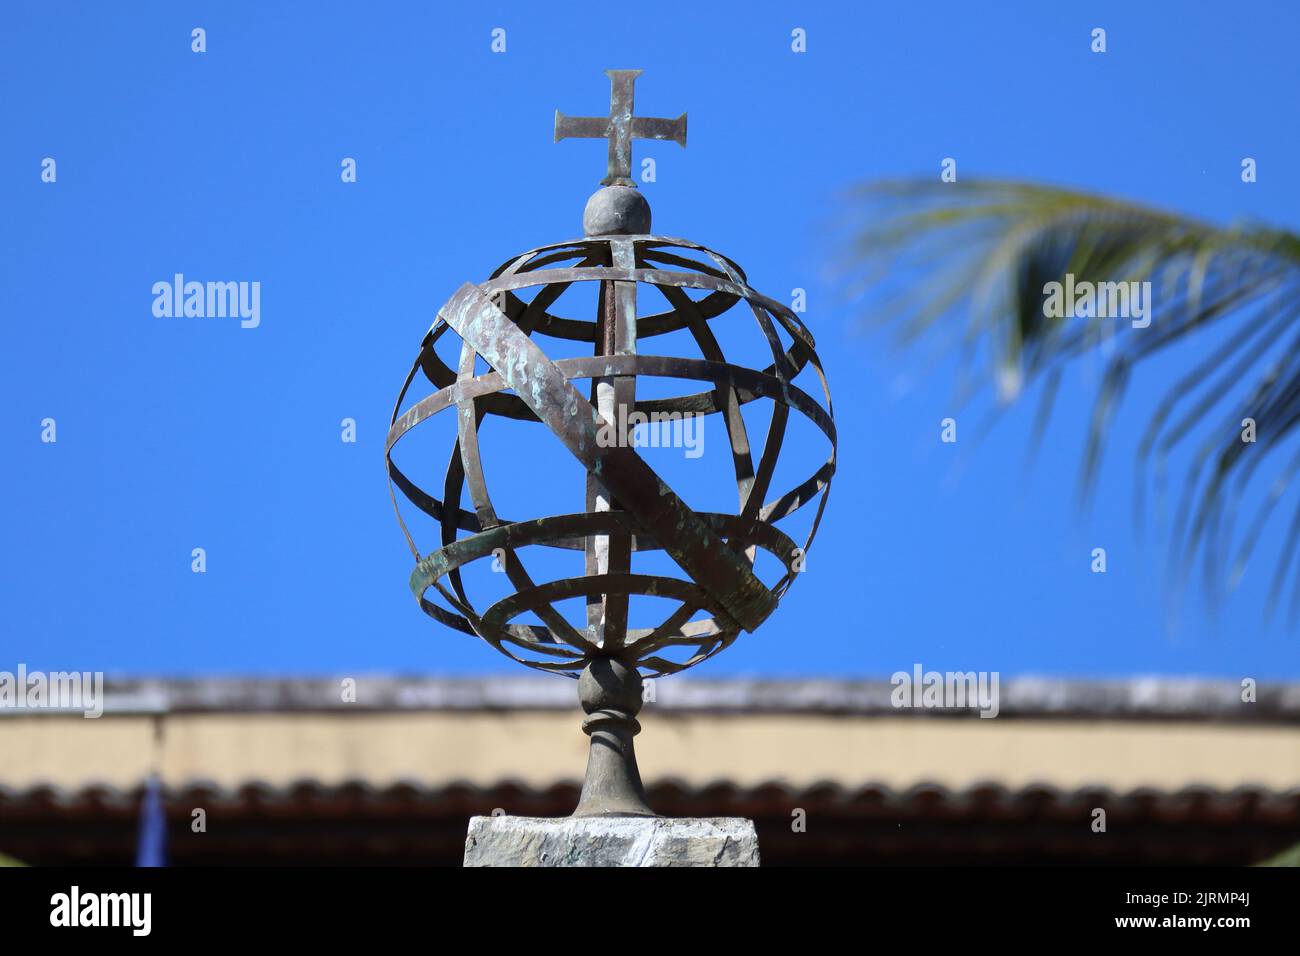 Metal Armillary Sphere, Esfera Armilar, symbole portugais et ancien outil de navigation, chez Fernando de Noronha, Brésil Banque D'Images